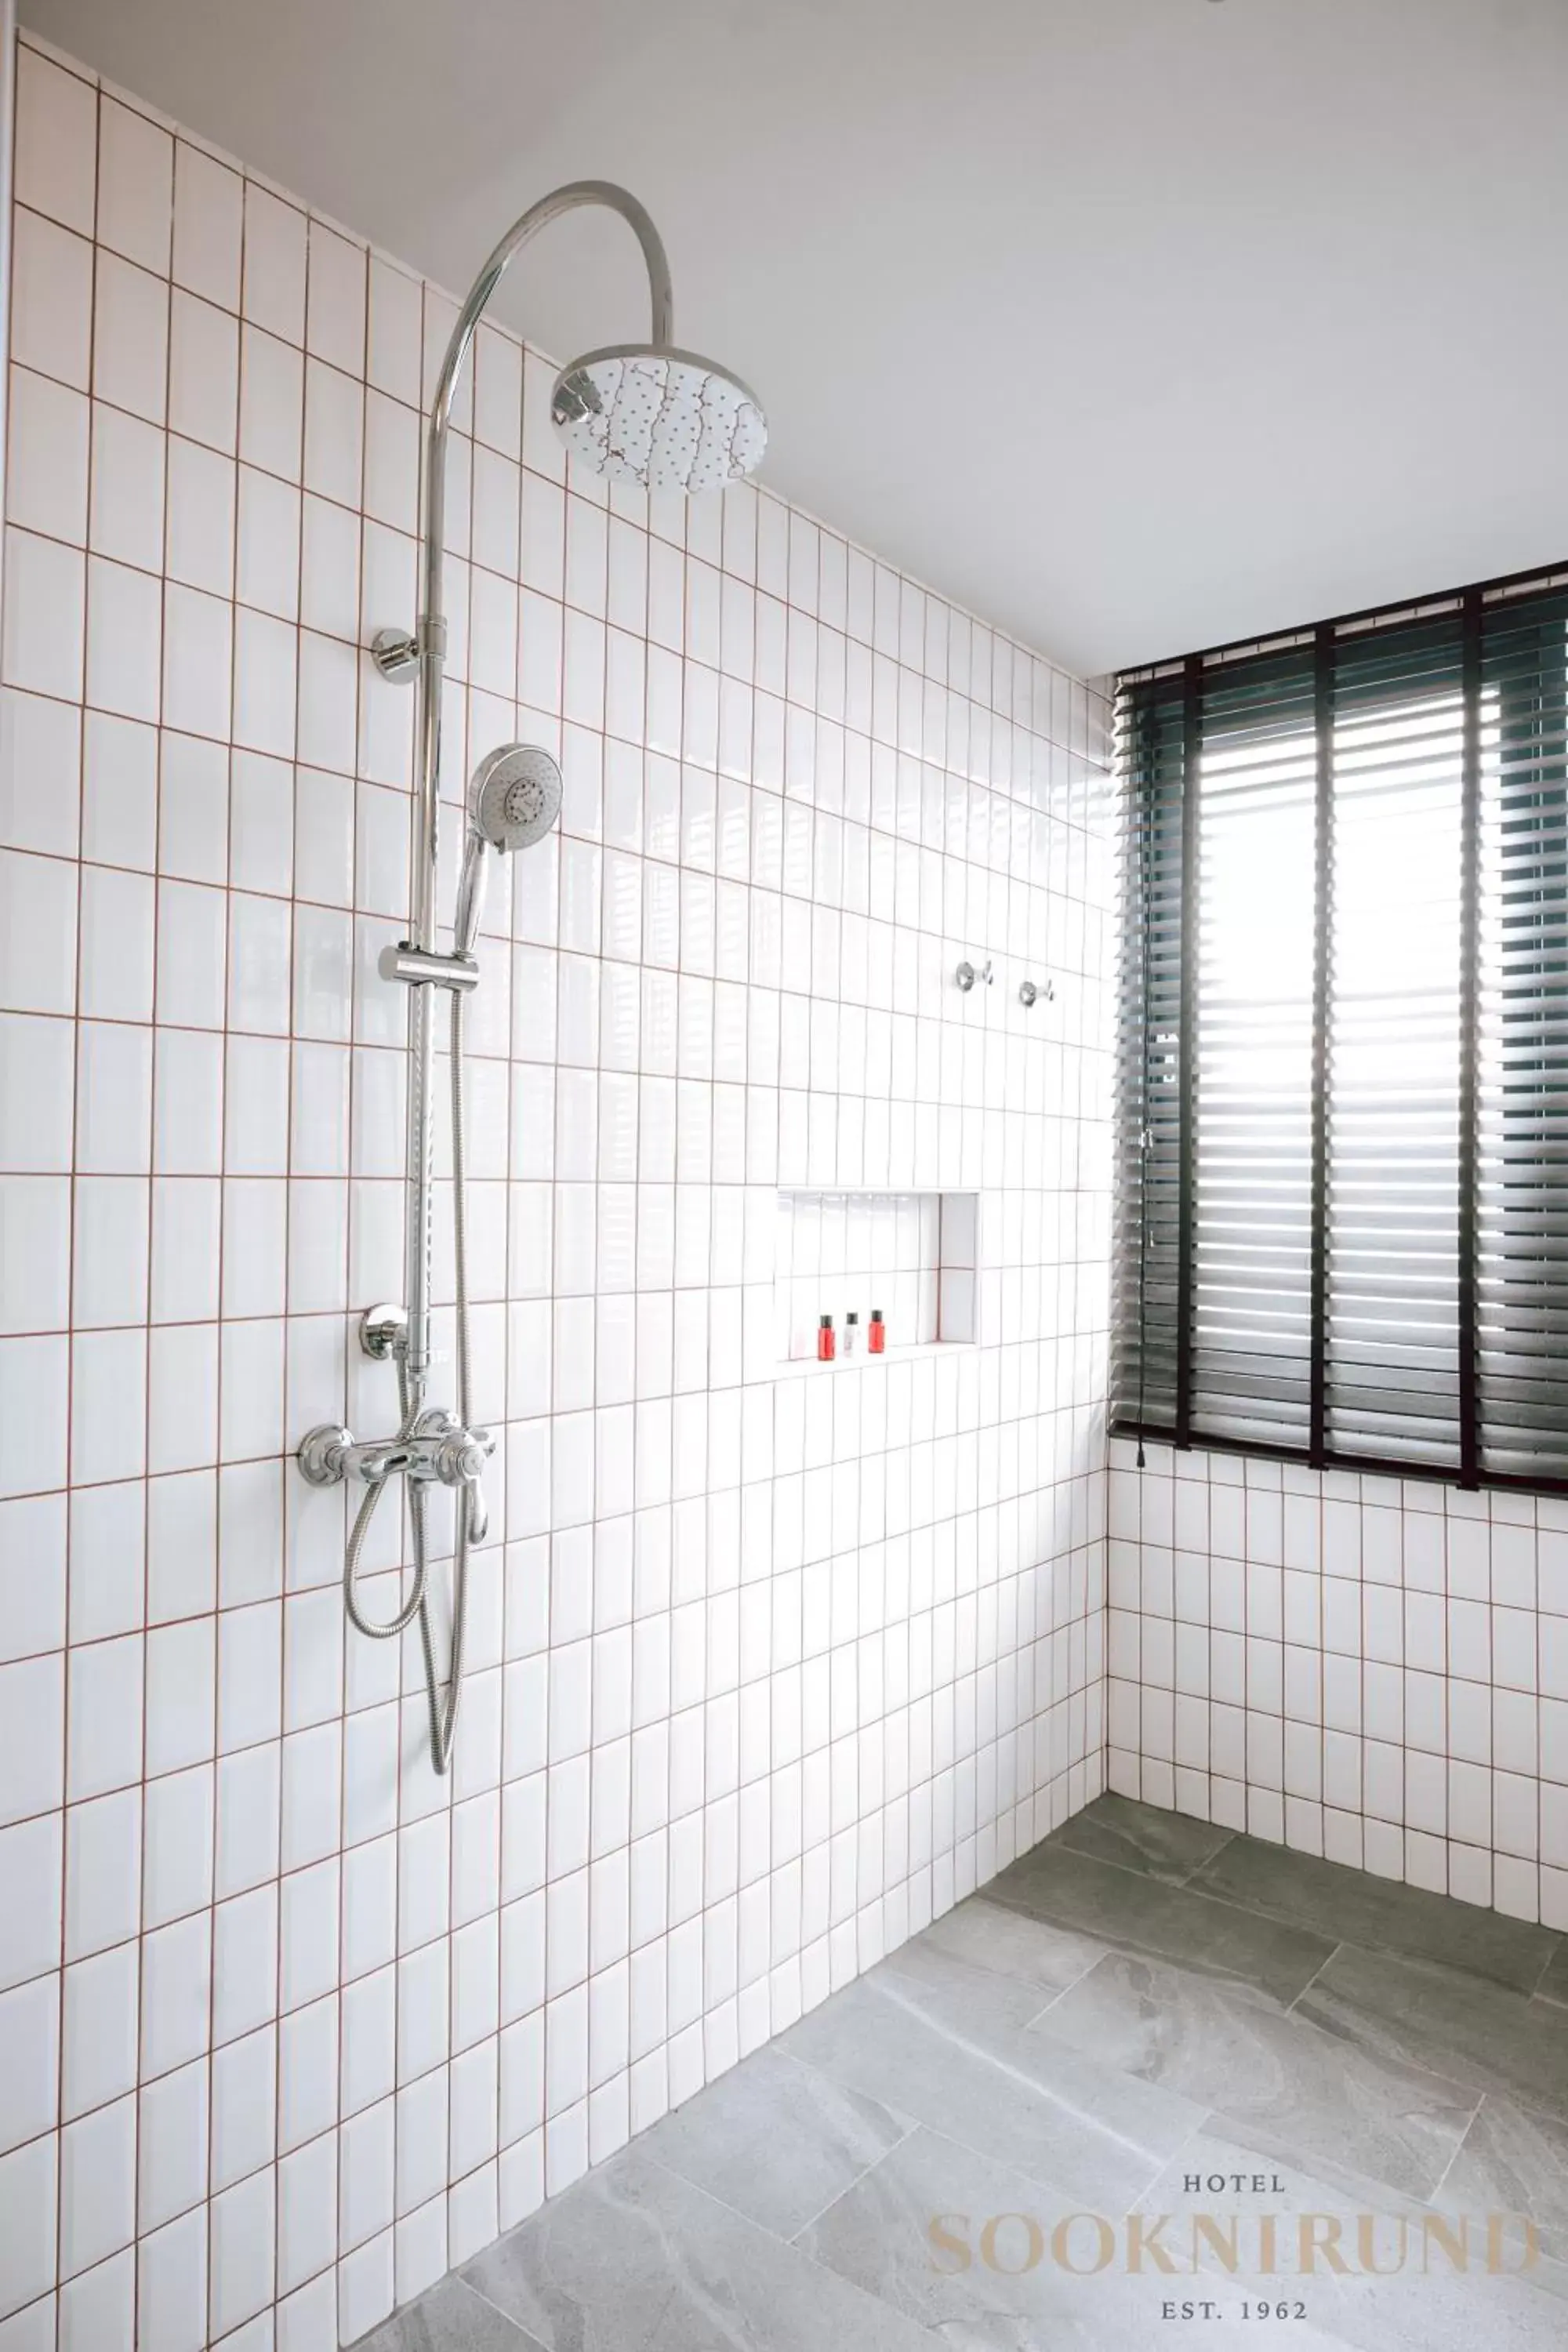 Shower, Bathroom in SOOKNIRUND HOTEL